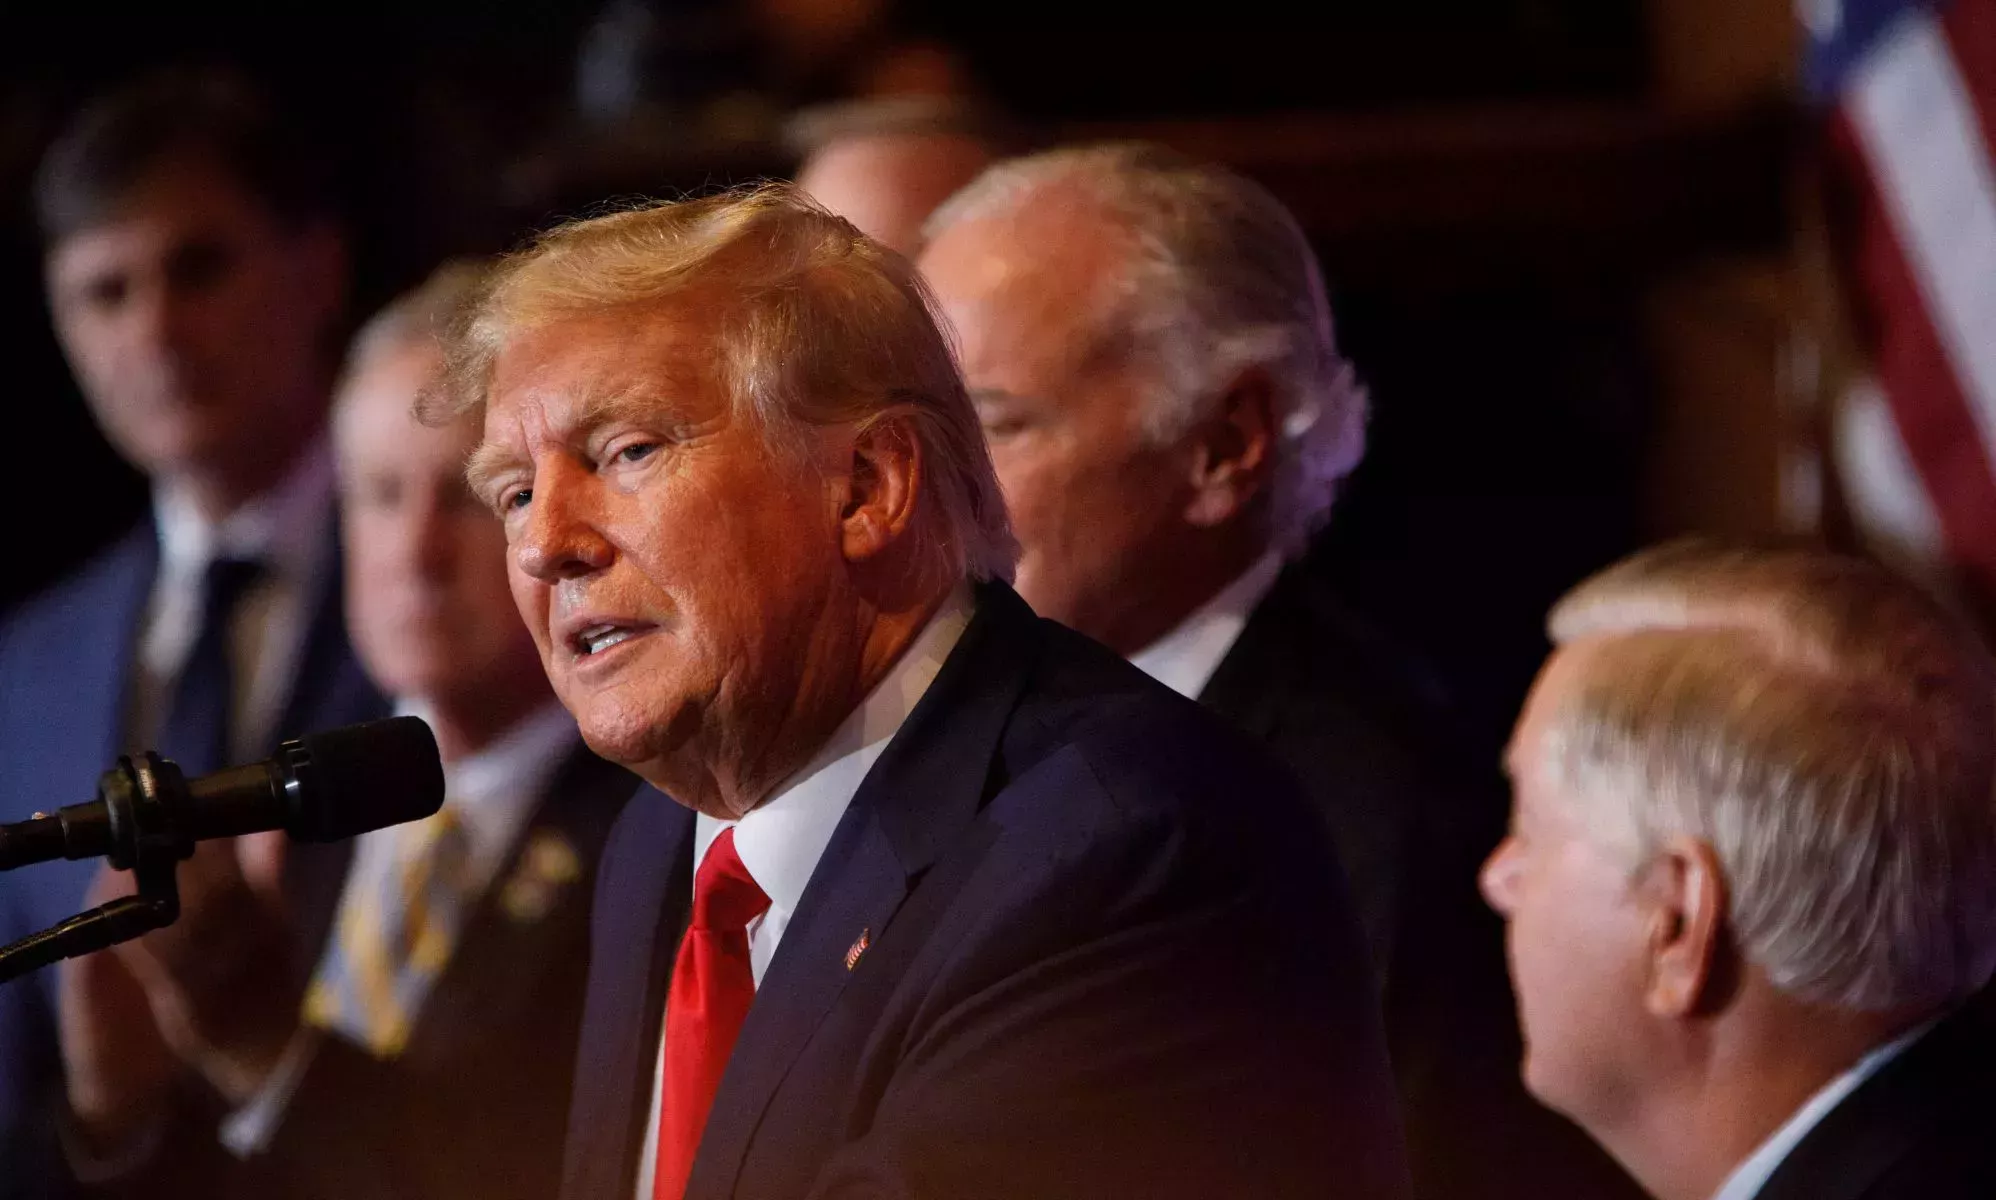 La 'aterradora' promesa de campaña antitrans de Donald Trump muestra una 'creciente desesperación', según los expertos